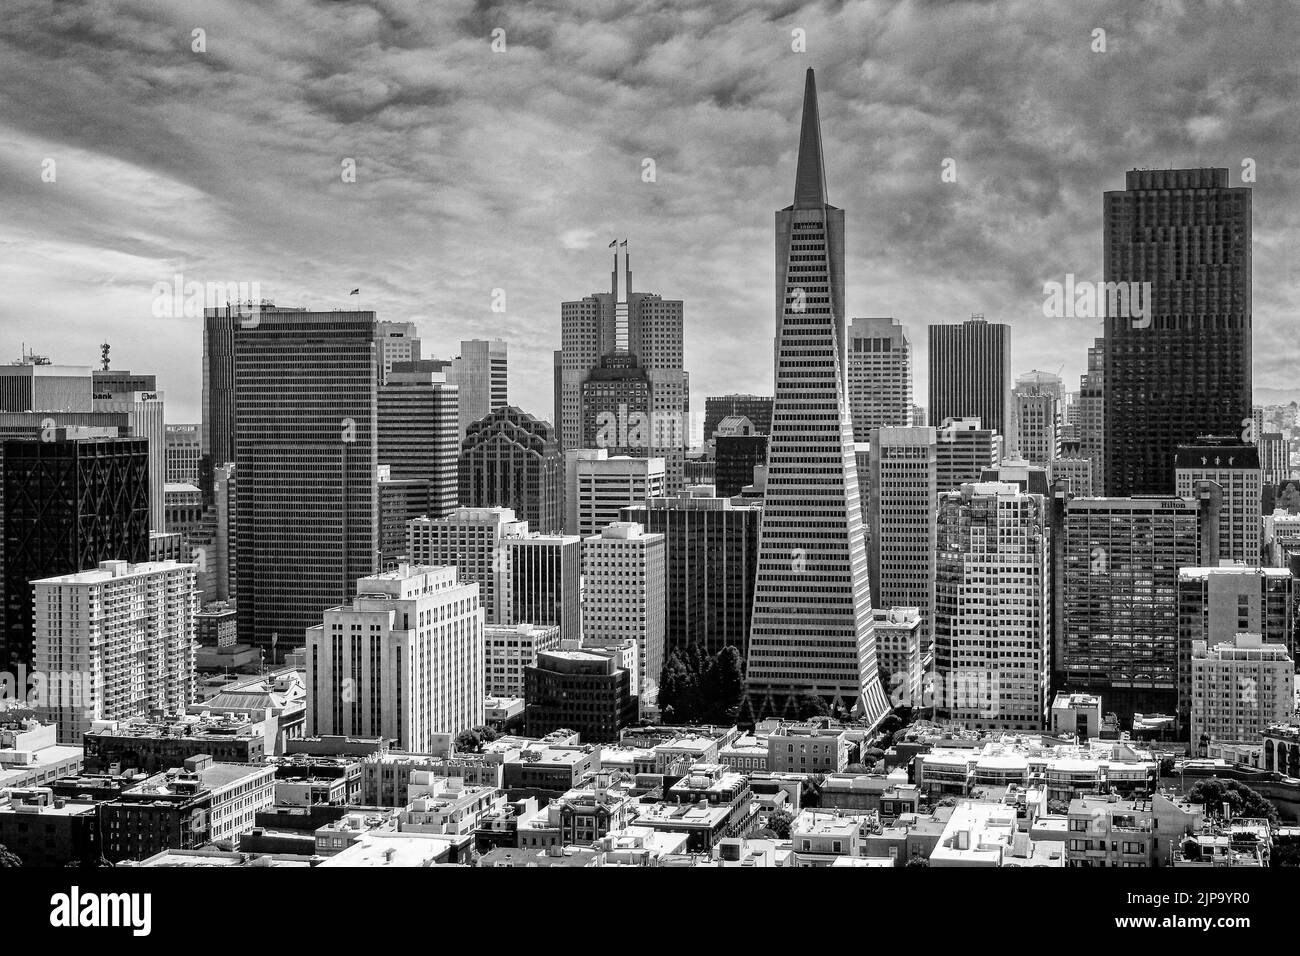 San Francisco - edificio Transamerica - circa 2013. La Piramide Transamerica è un grattacielo futurista a 48 piani. Foto Stock